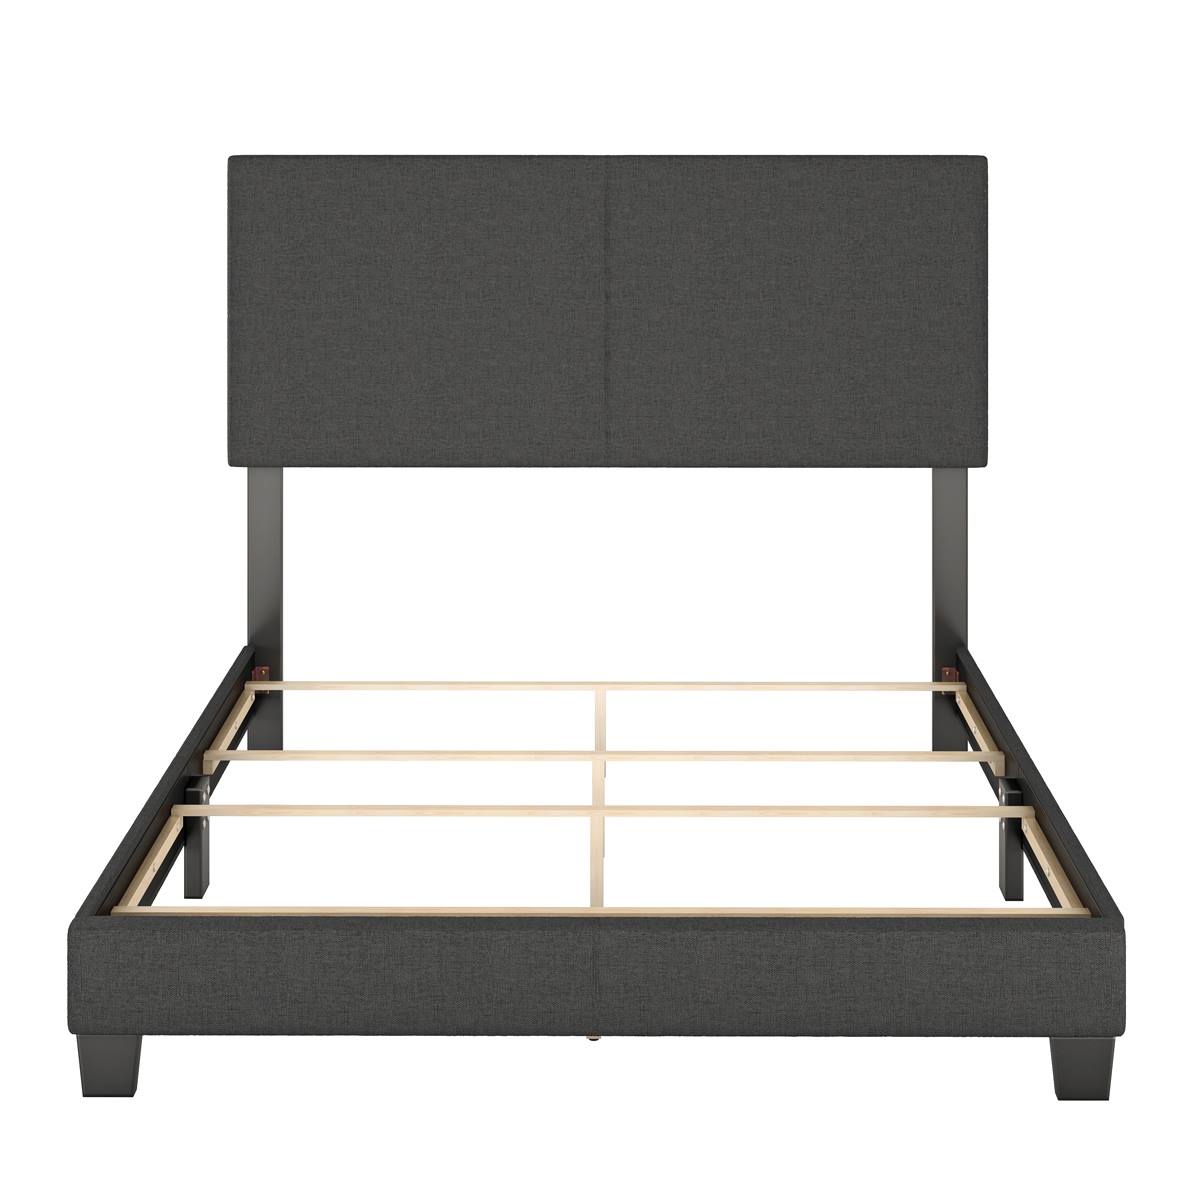 Boyd Sleep Grand Elegance Maia Upholstered Platform Bed Frame